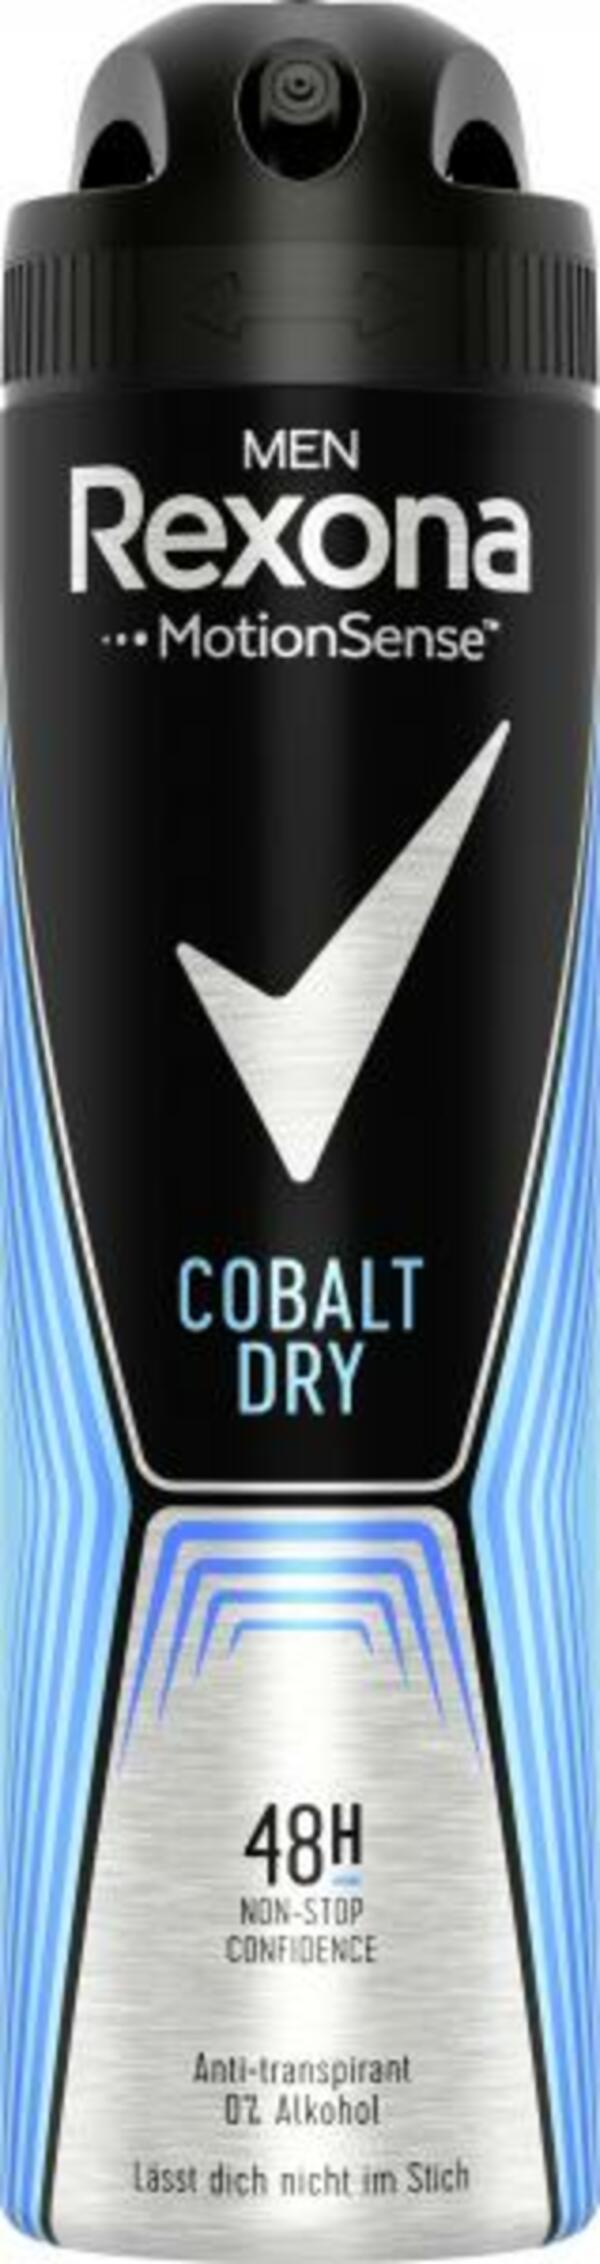 Bild 1 von Rexona Men Motionsense Cobalt Dry Deospray